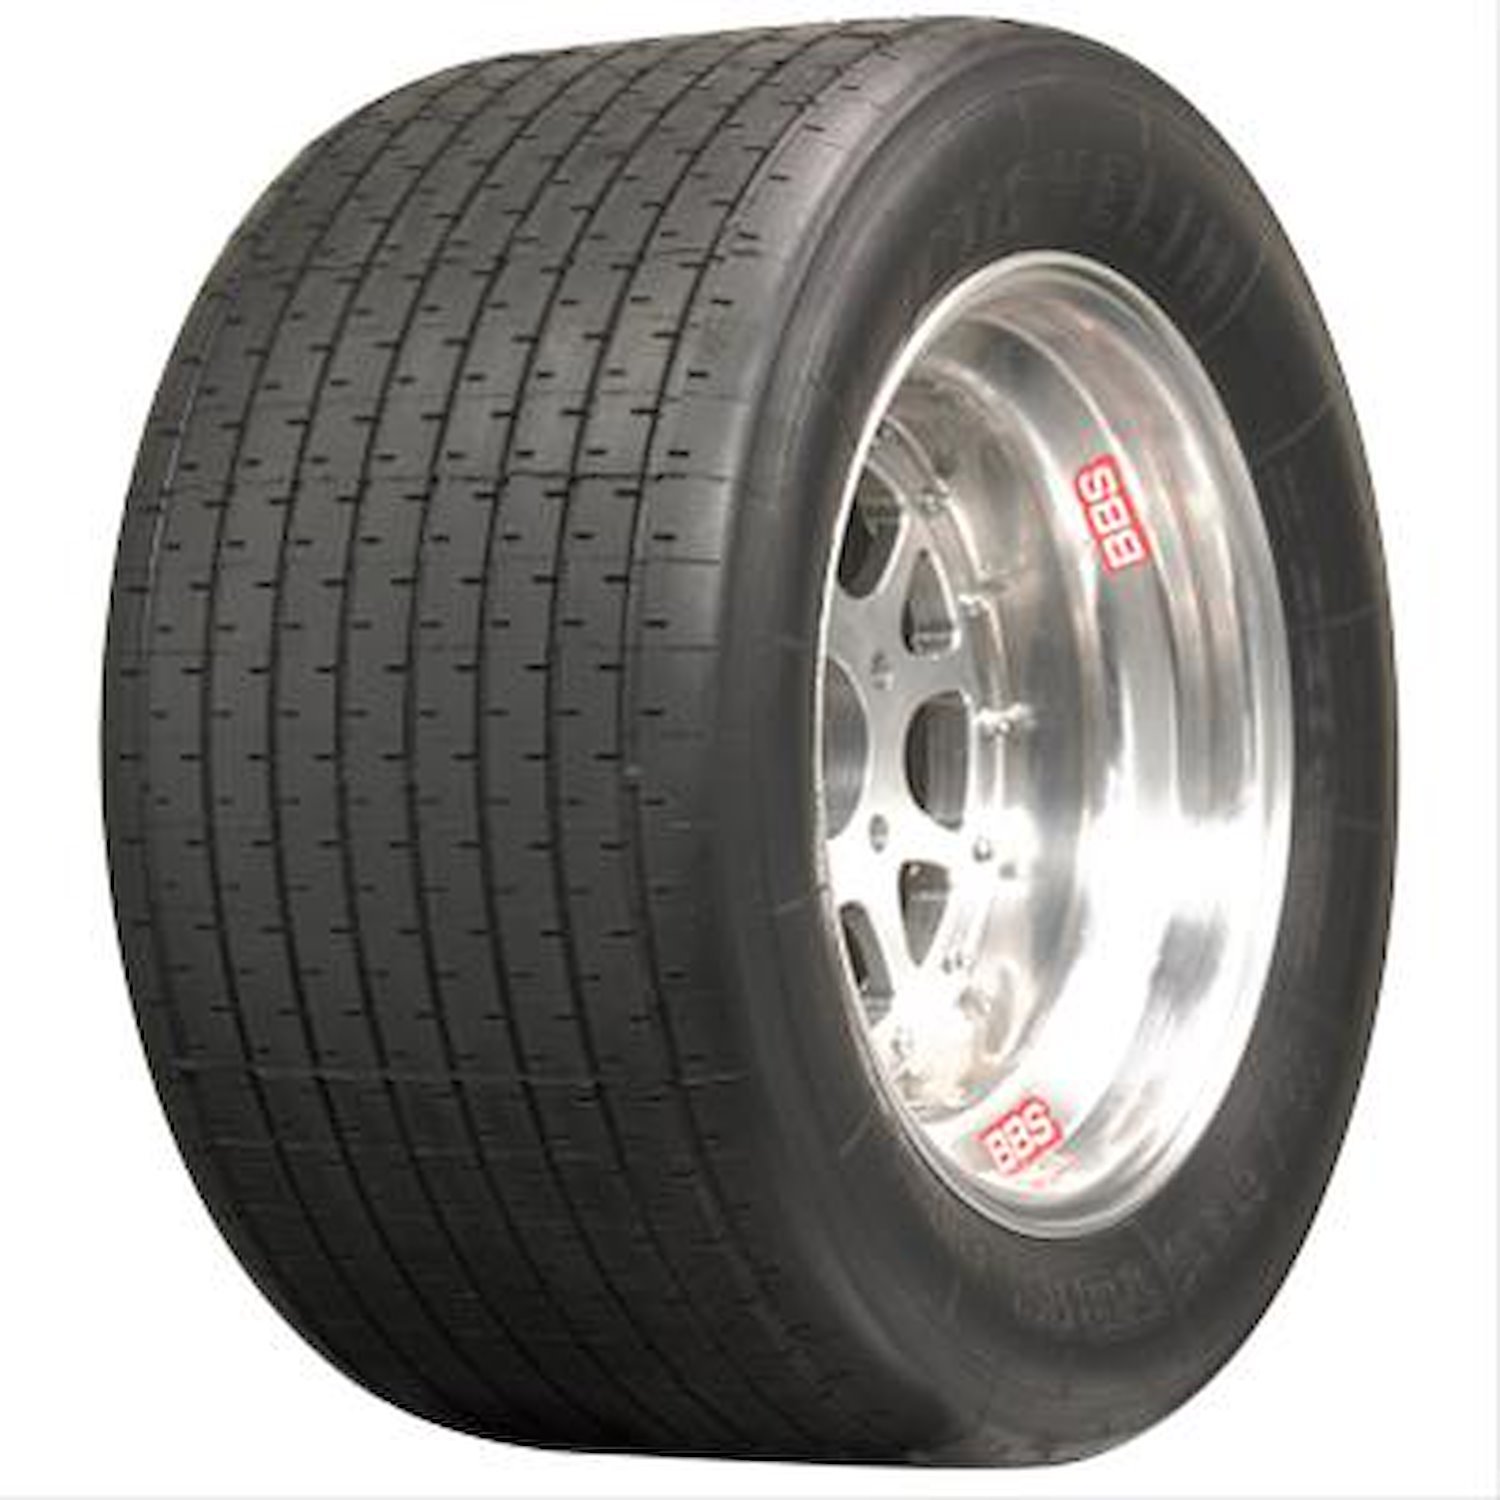 Michelin PB20 Tire, 23/62-15 86H